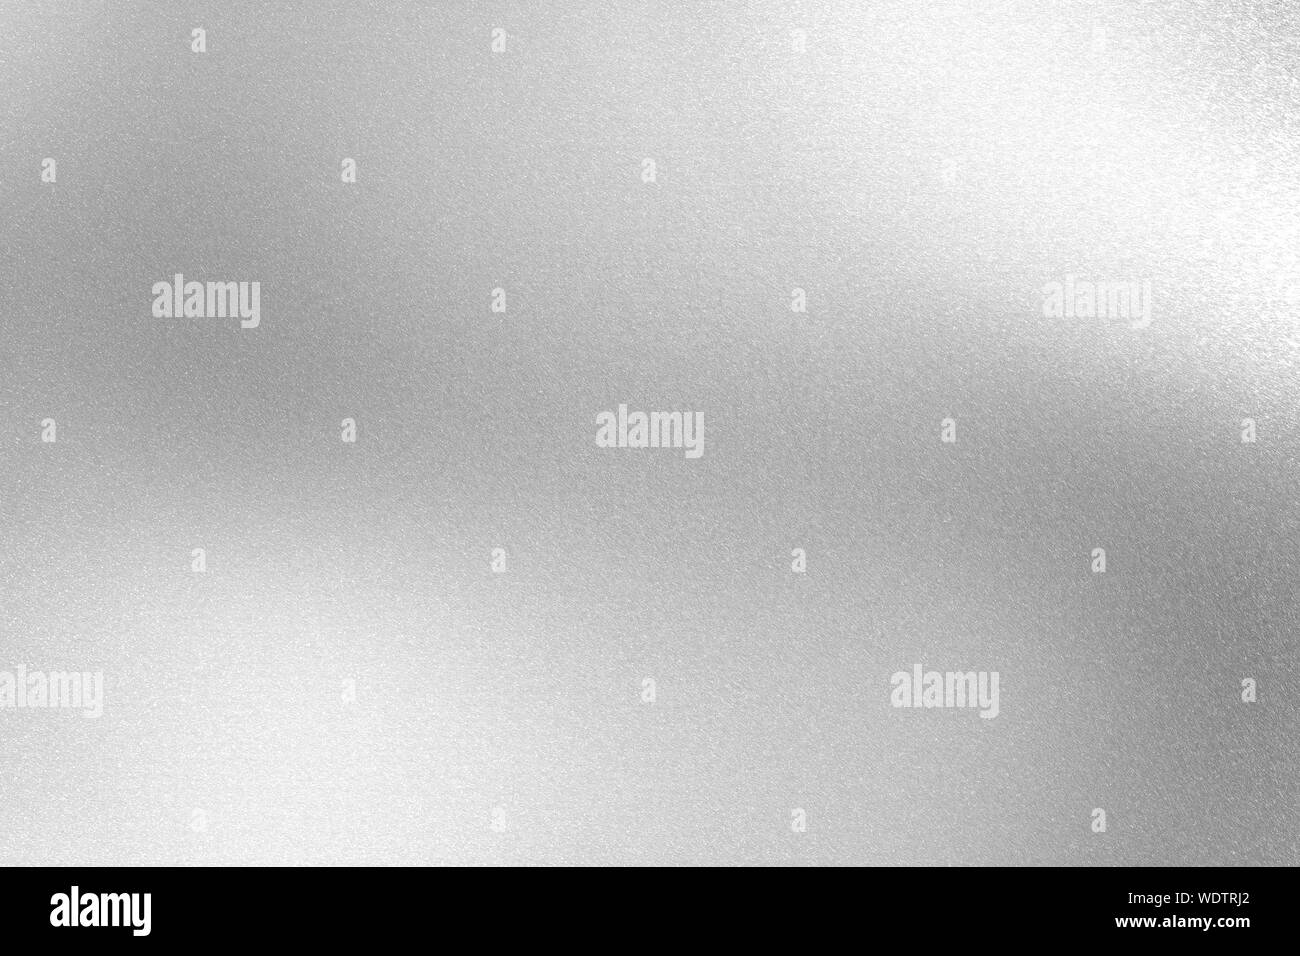 Aluminium Argent brillant metal surface du mur, abstract texture background Banque D'Images